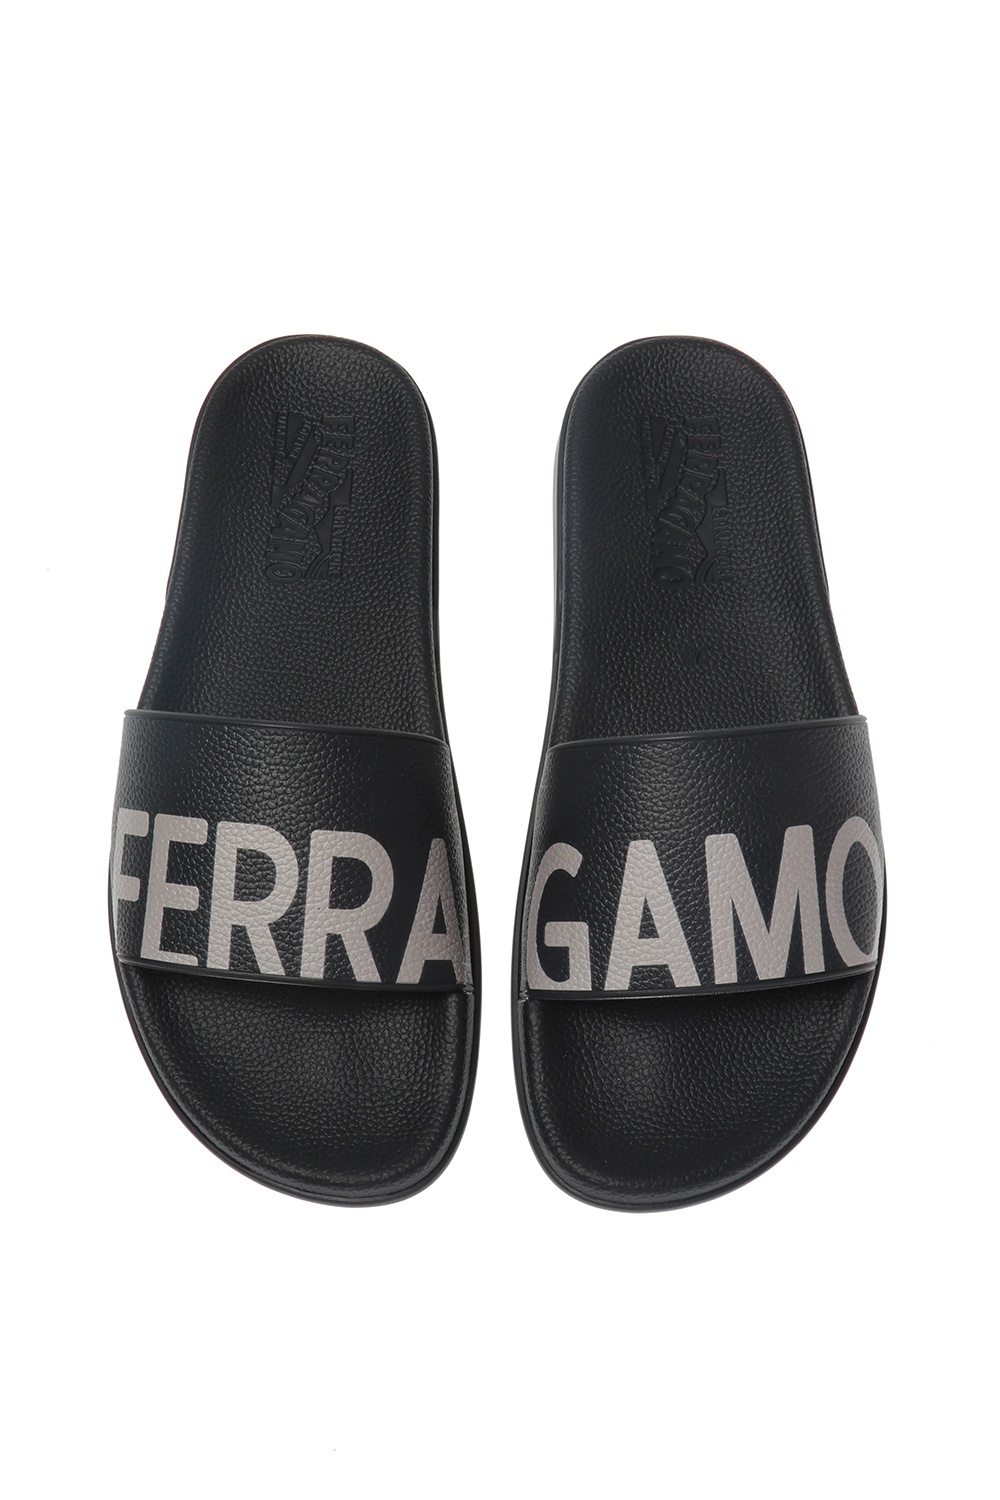 Salvatore Ferragamo Men's Amos Rubber Slides Flip Flops Shoes